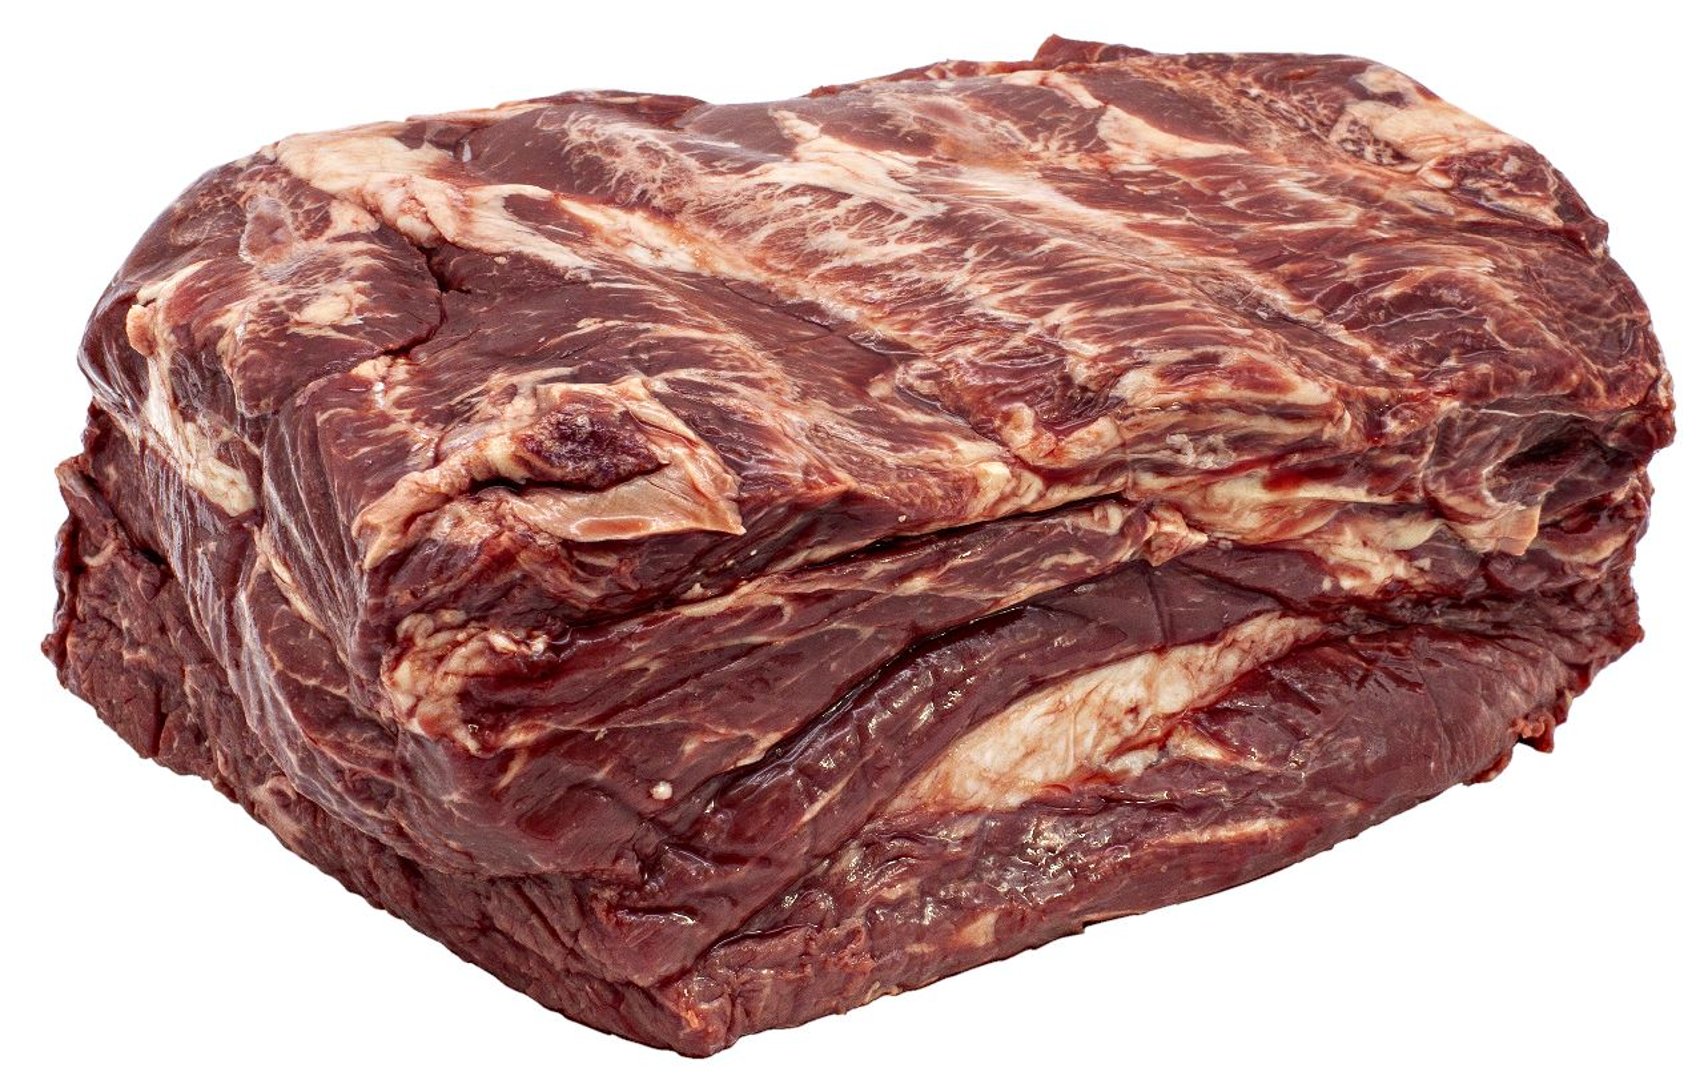 Emsrind - Dry Aged Rinder Nackensteak aus dem Zungenstück am Knochen gereift gekühlt 4 Stück à ca. 300 g